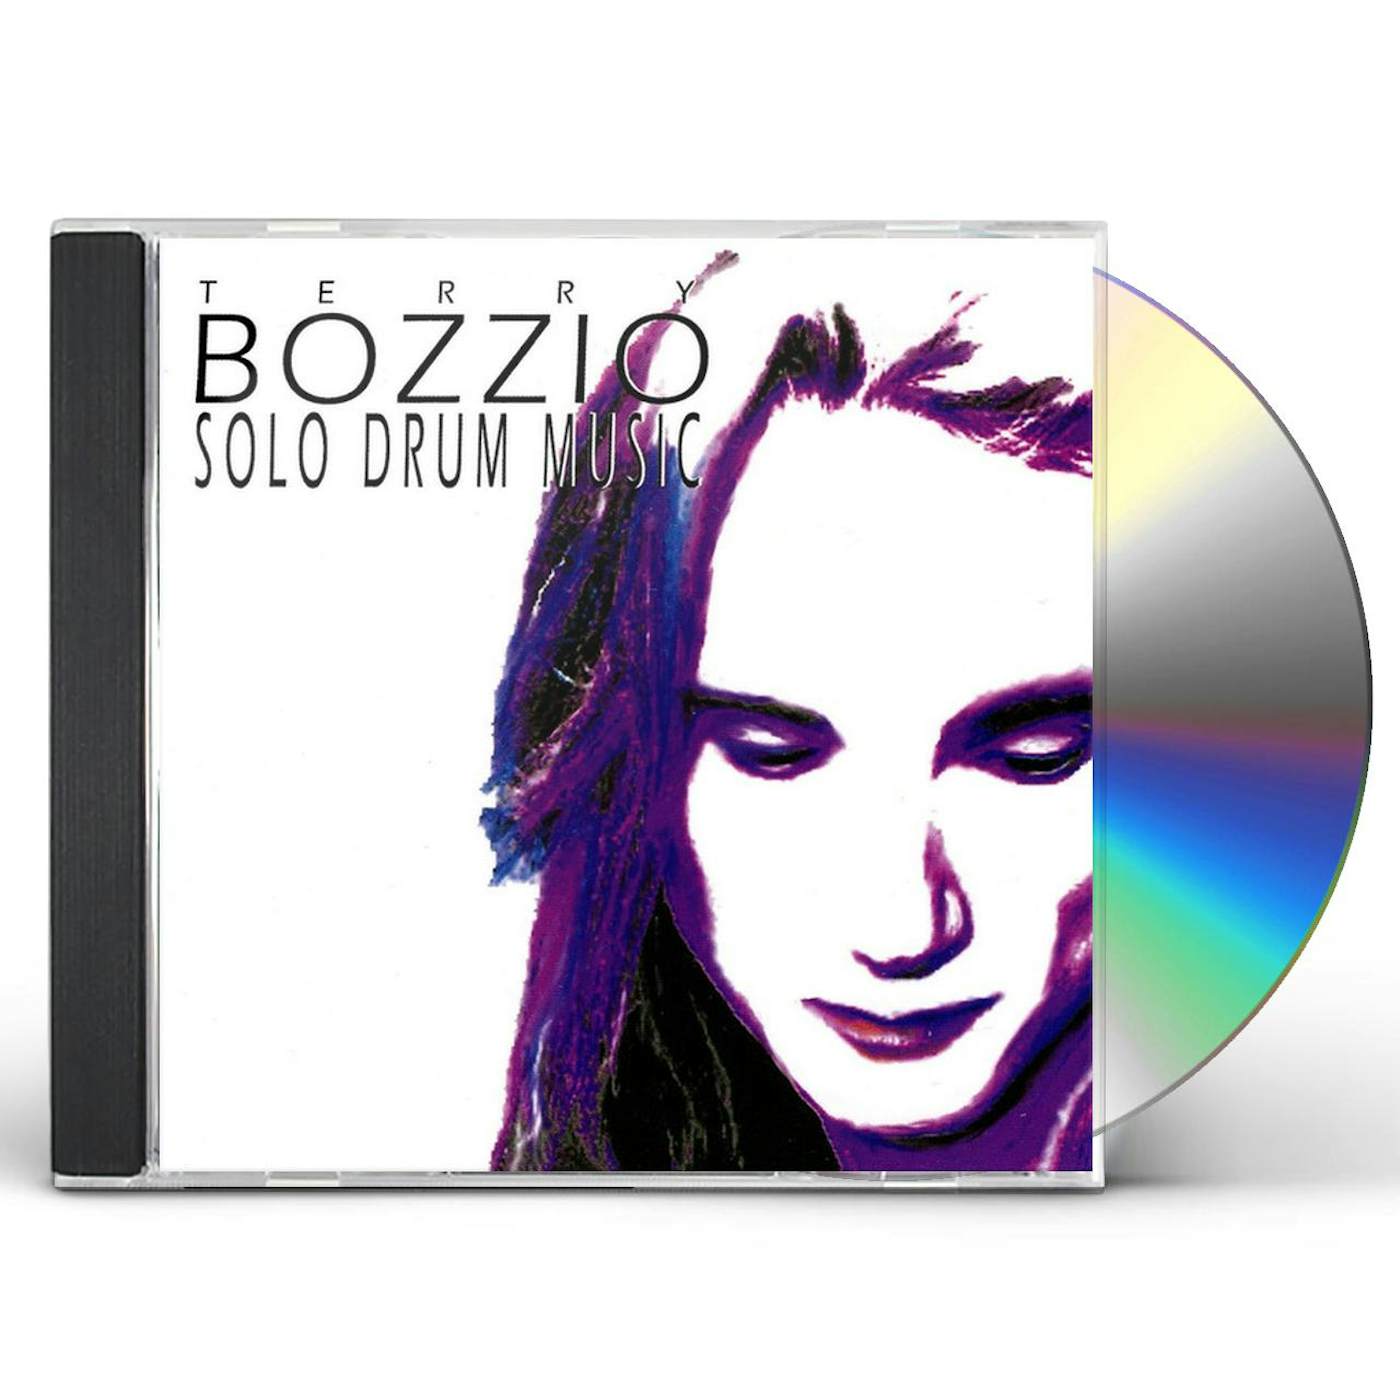 Terry Bozzio SOLO DRUM MUSIC 2 CD